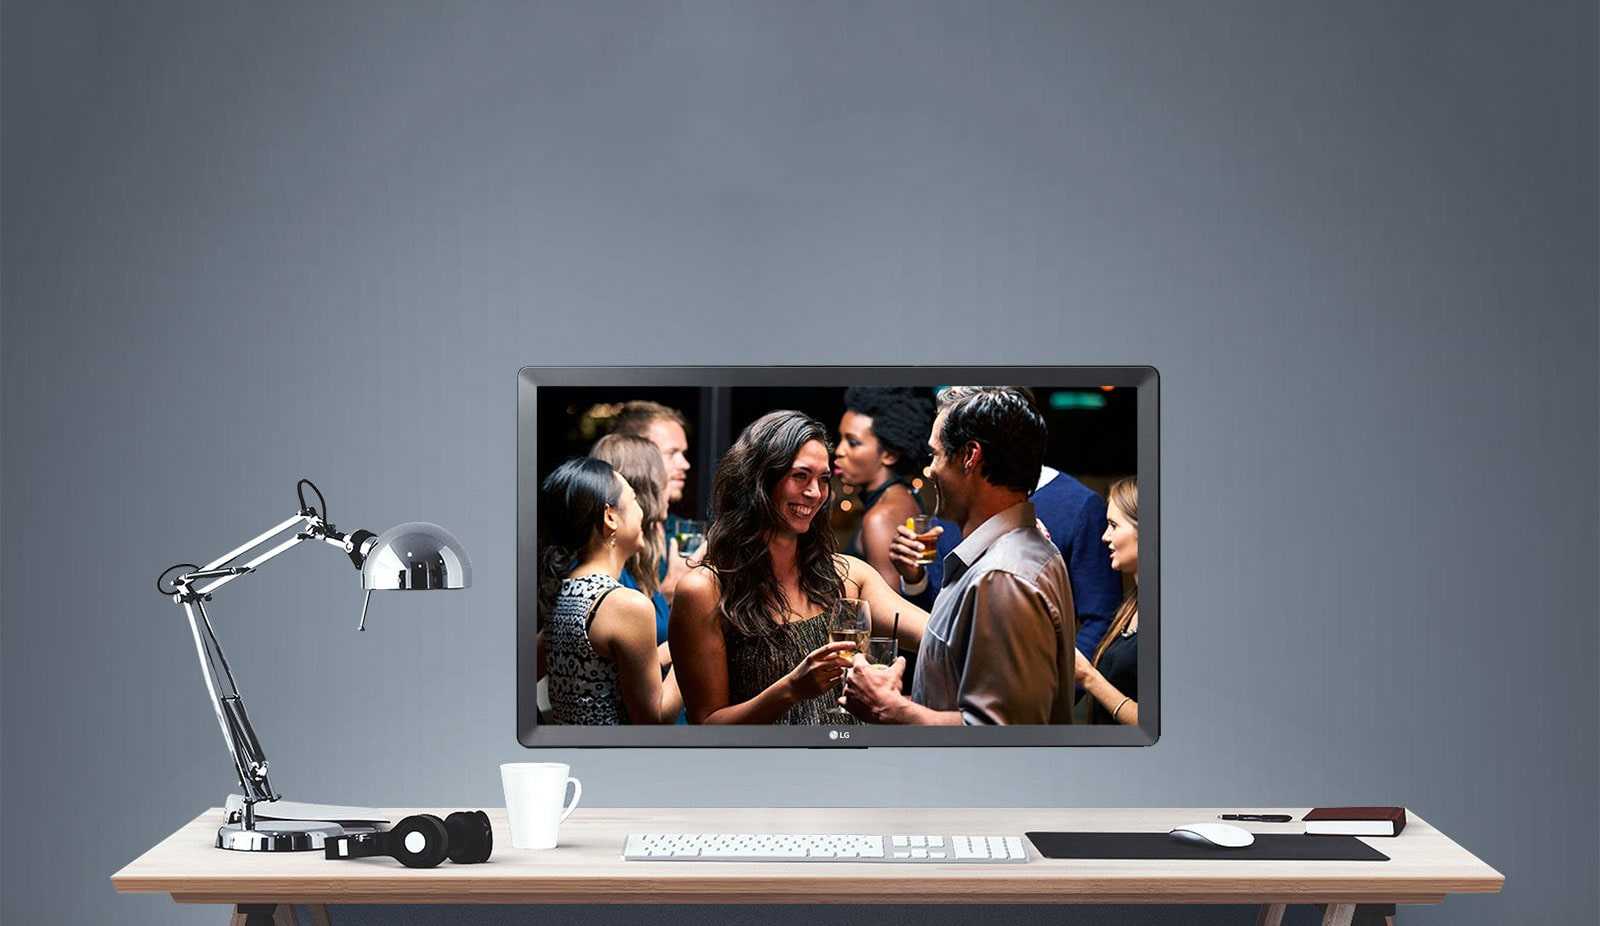 Lg led телевизор 28tl510v-pz купить от 11599 руб в екатеринбурге, сравнить цены, отзывы, видео обзоры и характеристики - sku3905293